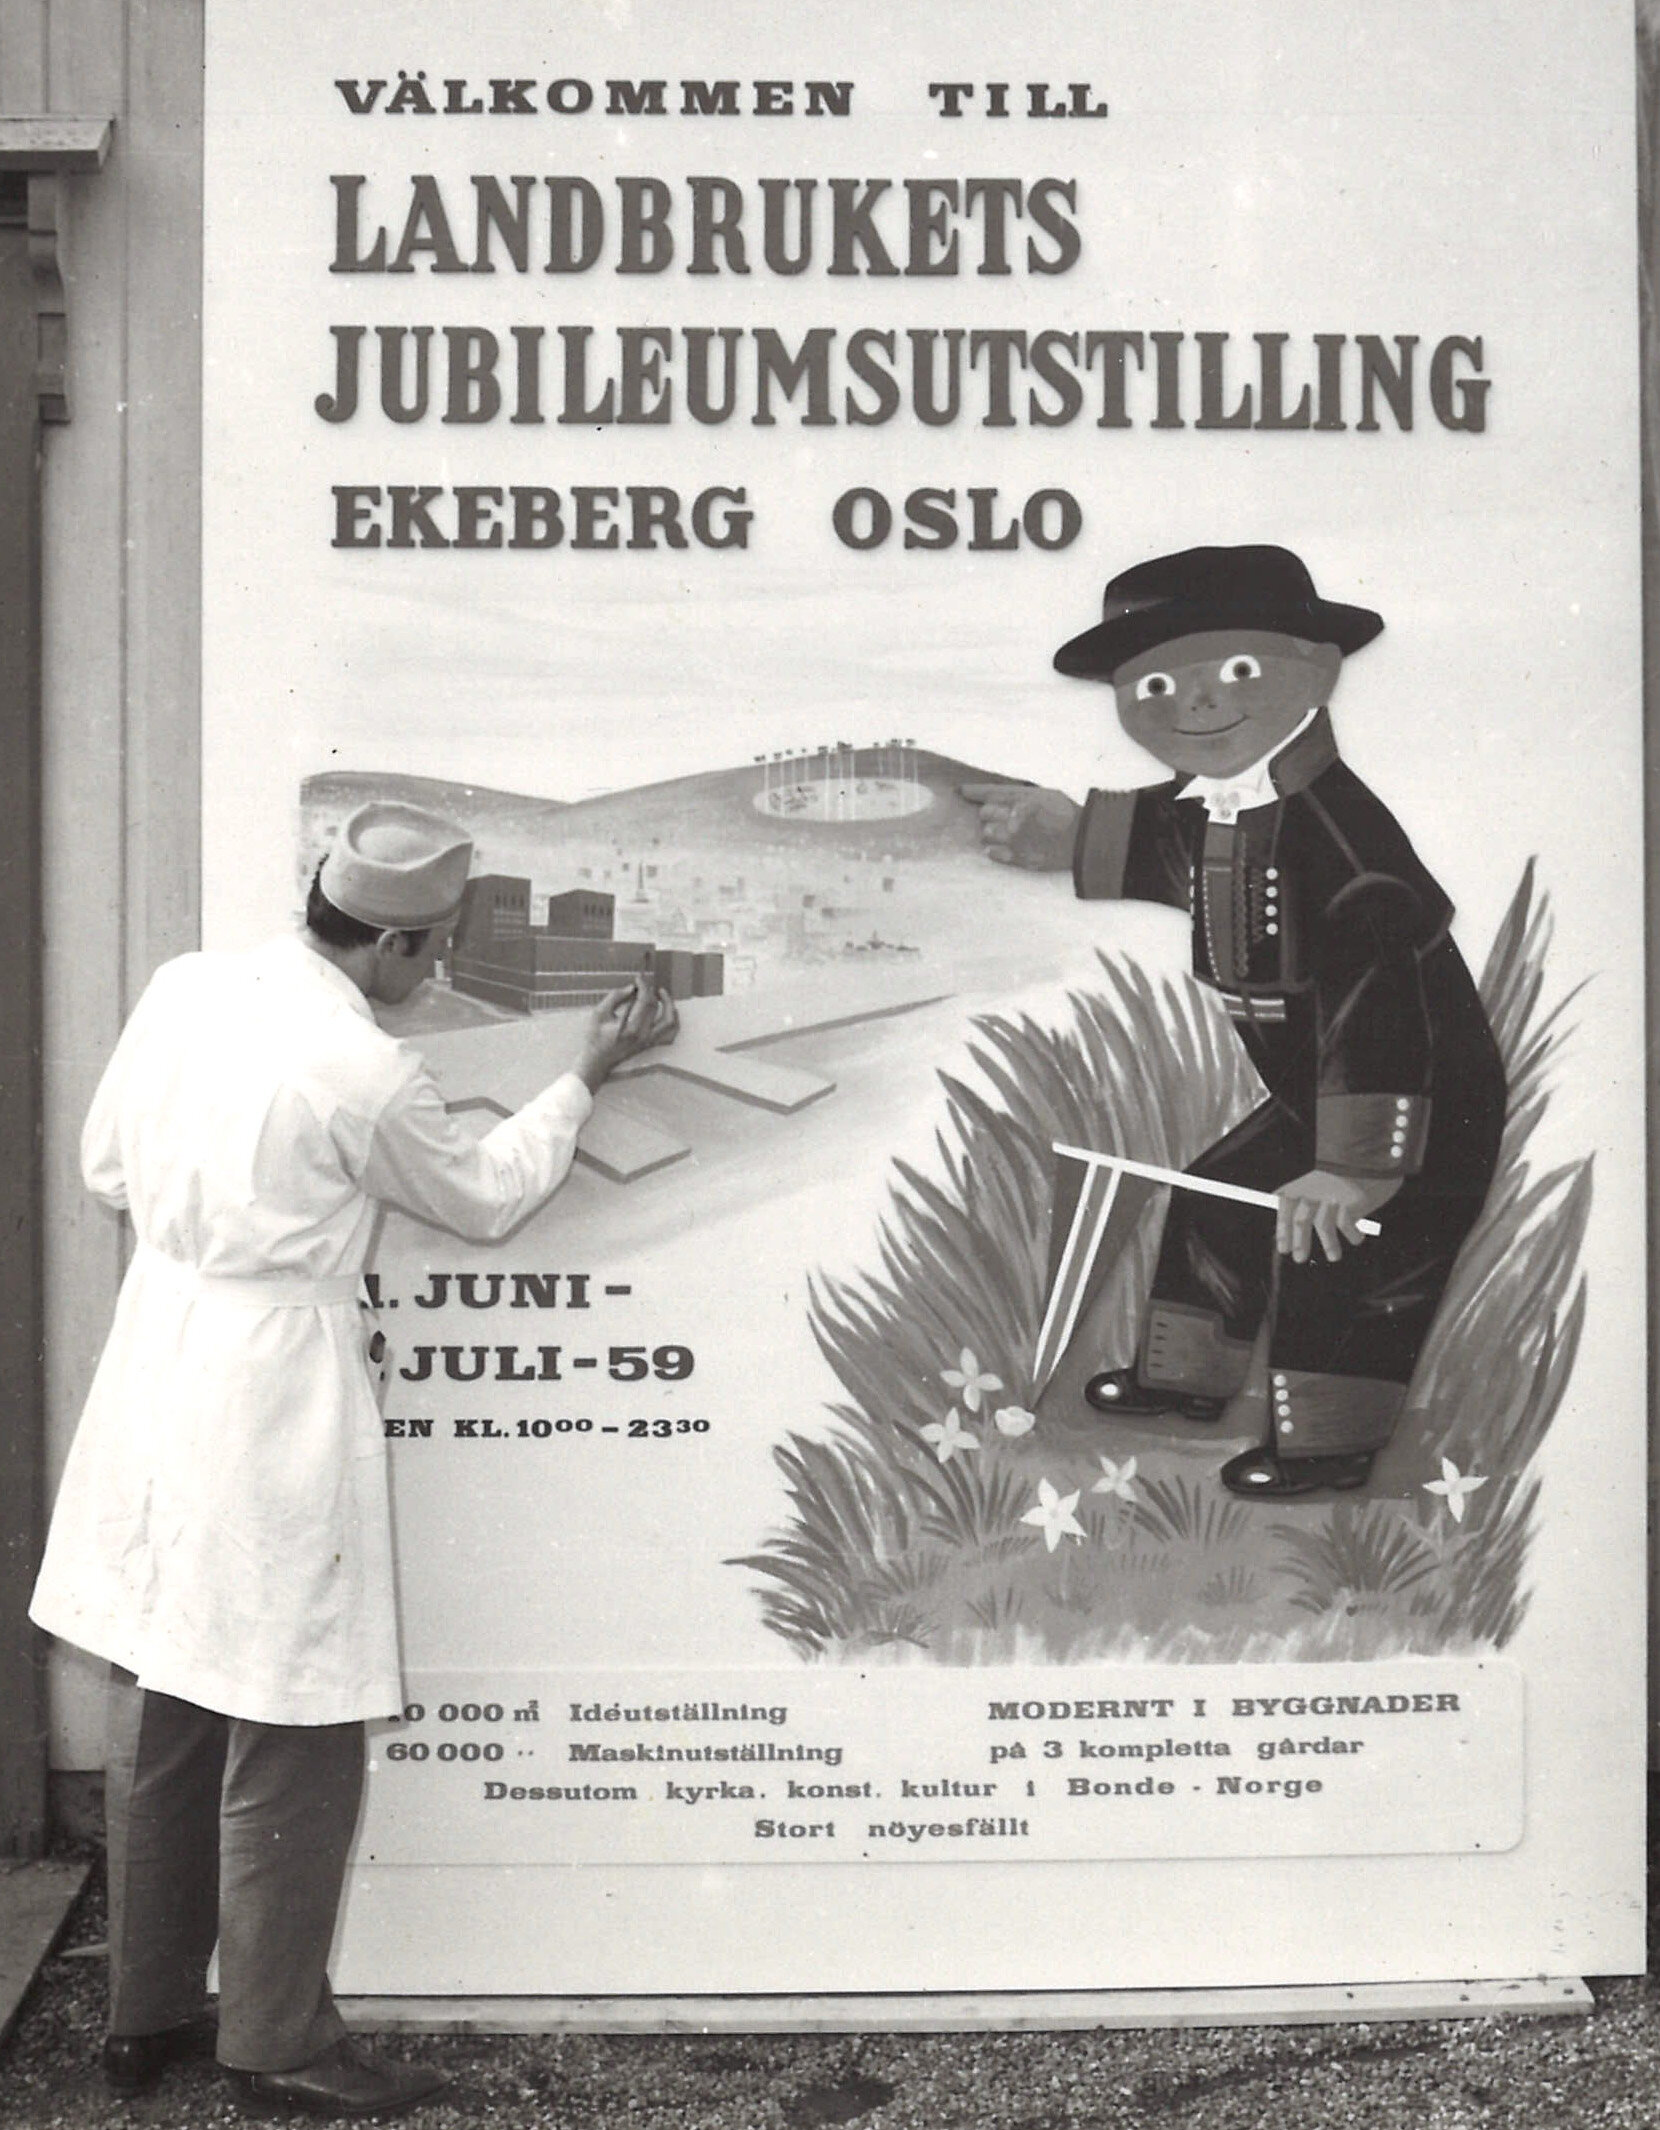  Ola Ekeberg figurerte i en storstilt reklamekampanje med plakater, brosjyrer, annonser og presseomtale. Denne plakaten ble benyttet på en utstilling i Sverige for å lokke svenskene over grensen sommeren 1959. 